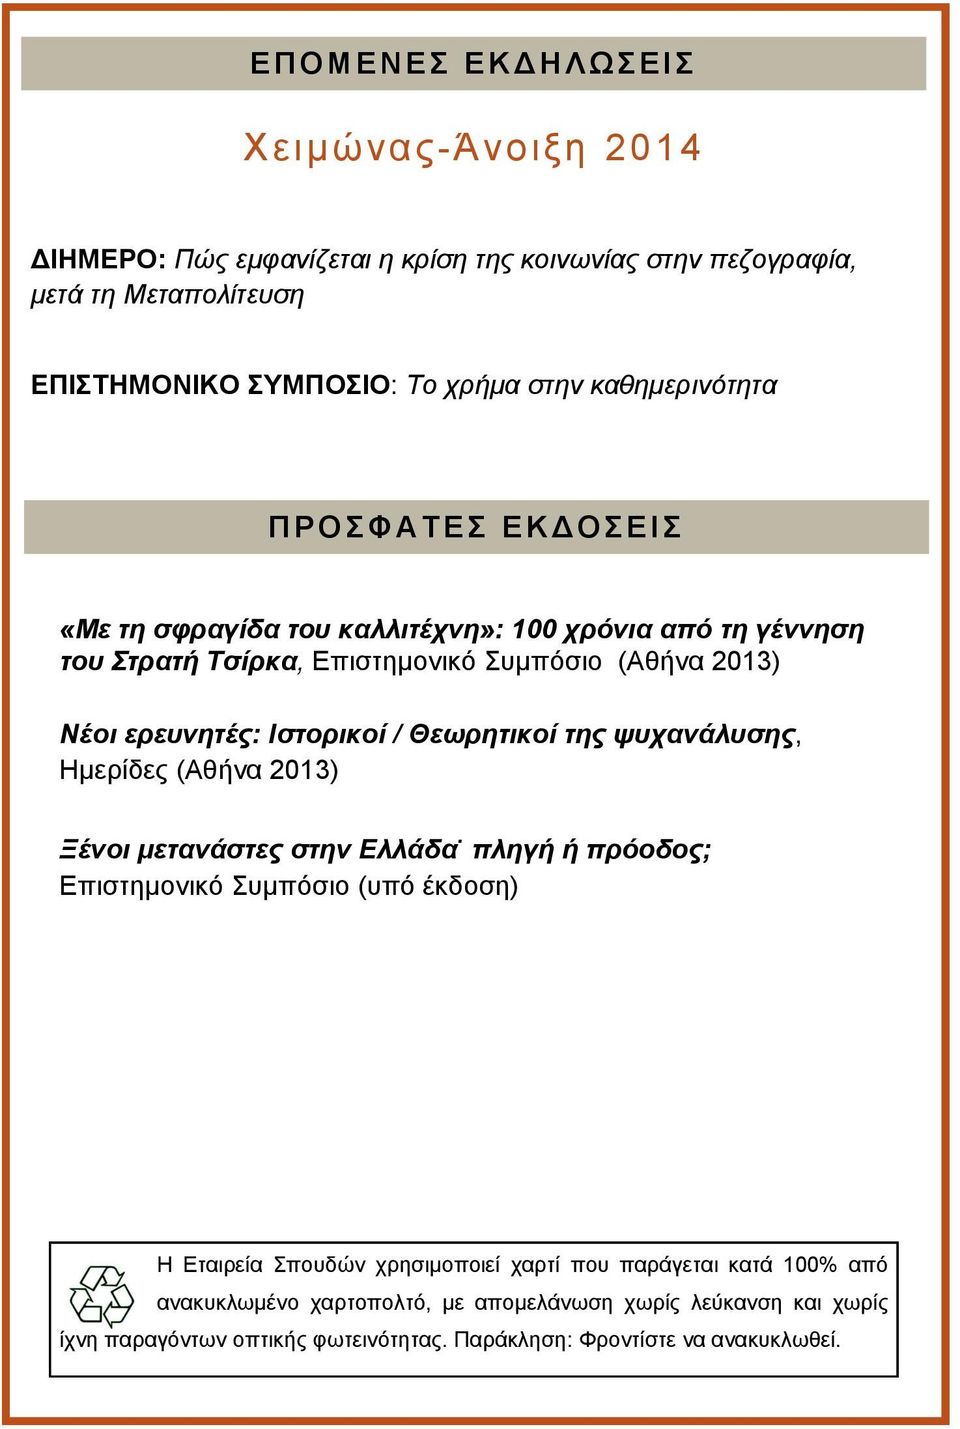 ερευνητές: Ιστορικοί / Θεωρητικοί της ψυχανάλυσης, Ημερίδες (Αθήνα 2013) Ξένοι μετανάστες στην Ελλάδα.